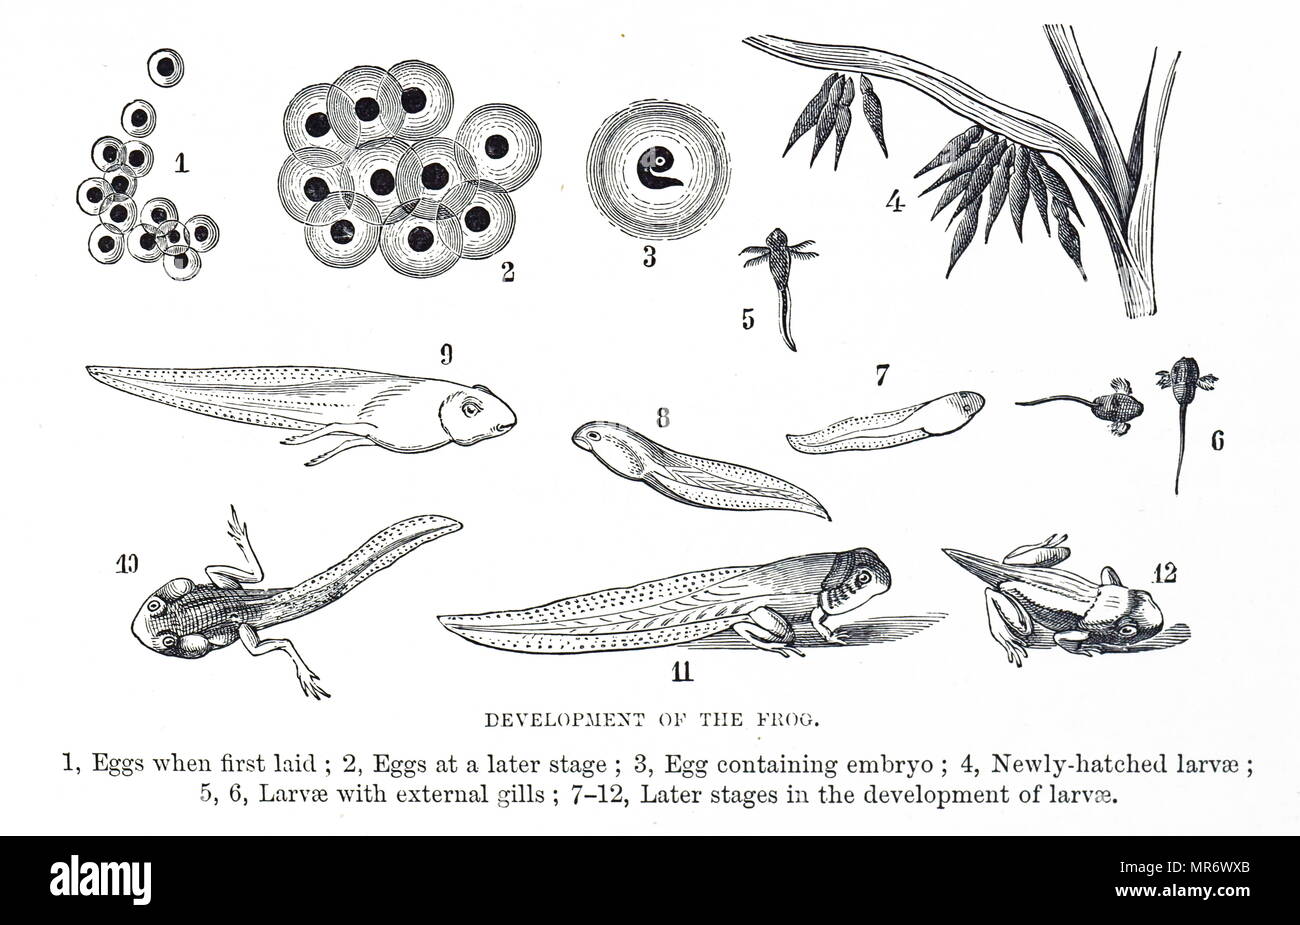 Gravure illustrant les étapes dans le développement de la grenouille. En date du 19e siècle Banque D'Images